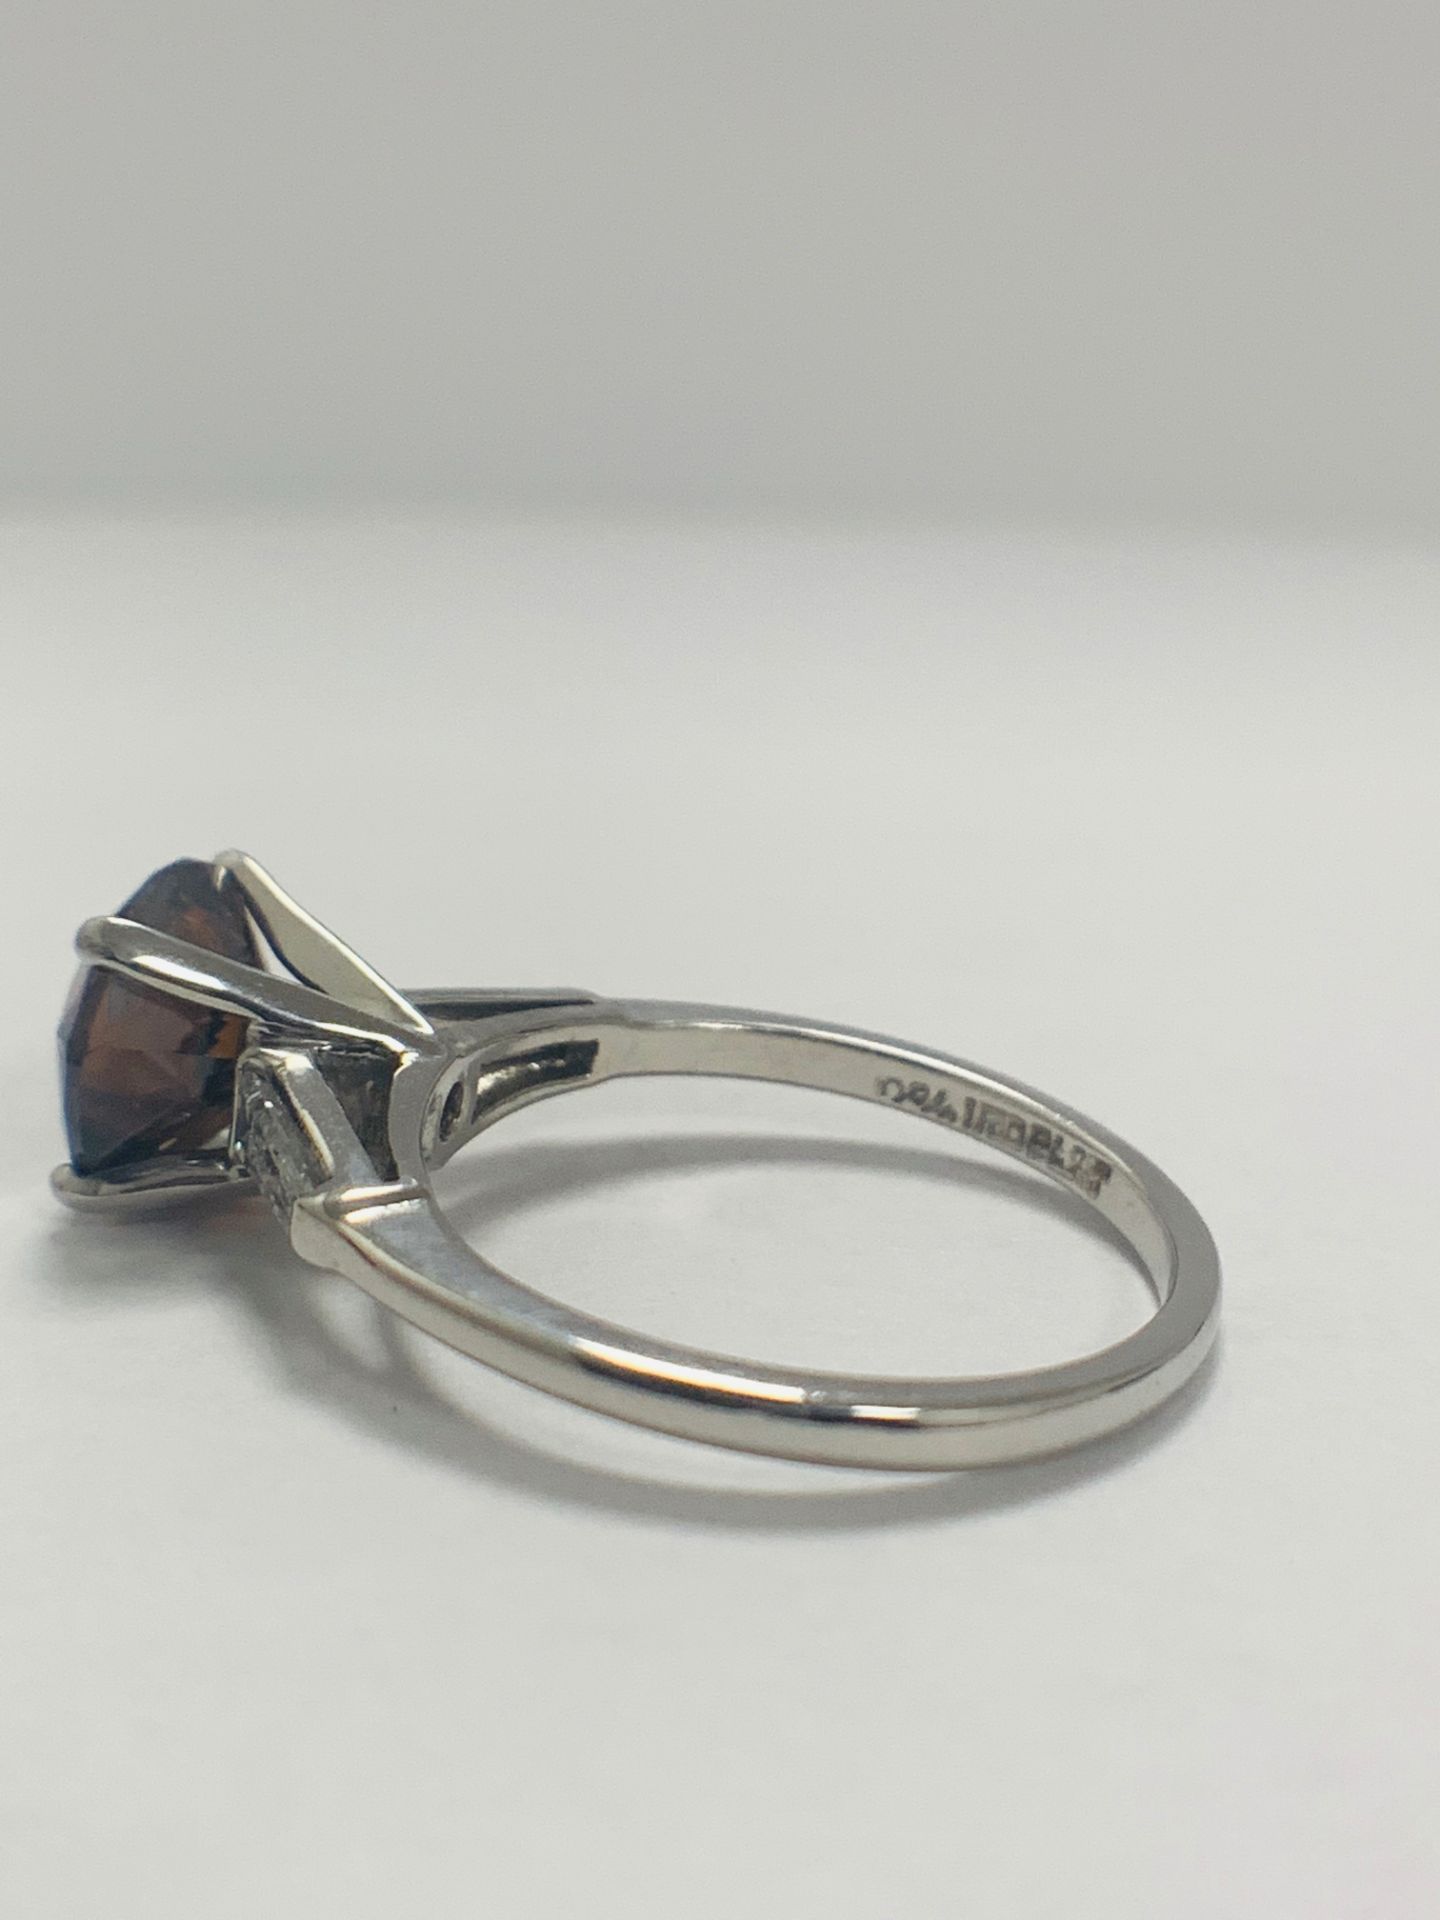 Platinum Diamond Ring Featuring Centre, Round Brilliant Cut, Deep Orangey Brown Diamond (2.15ct) - Image 6 of 14